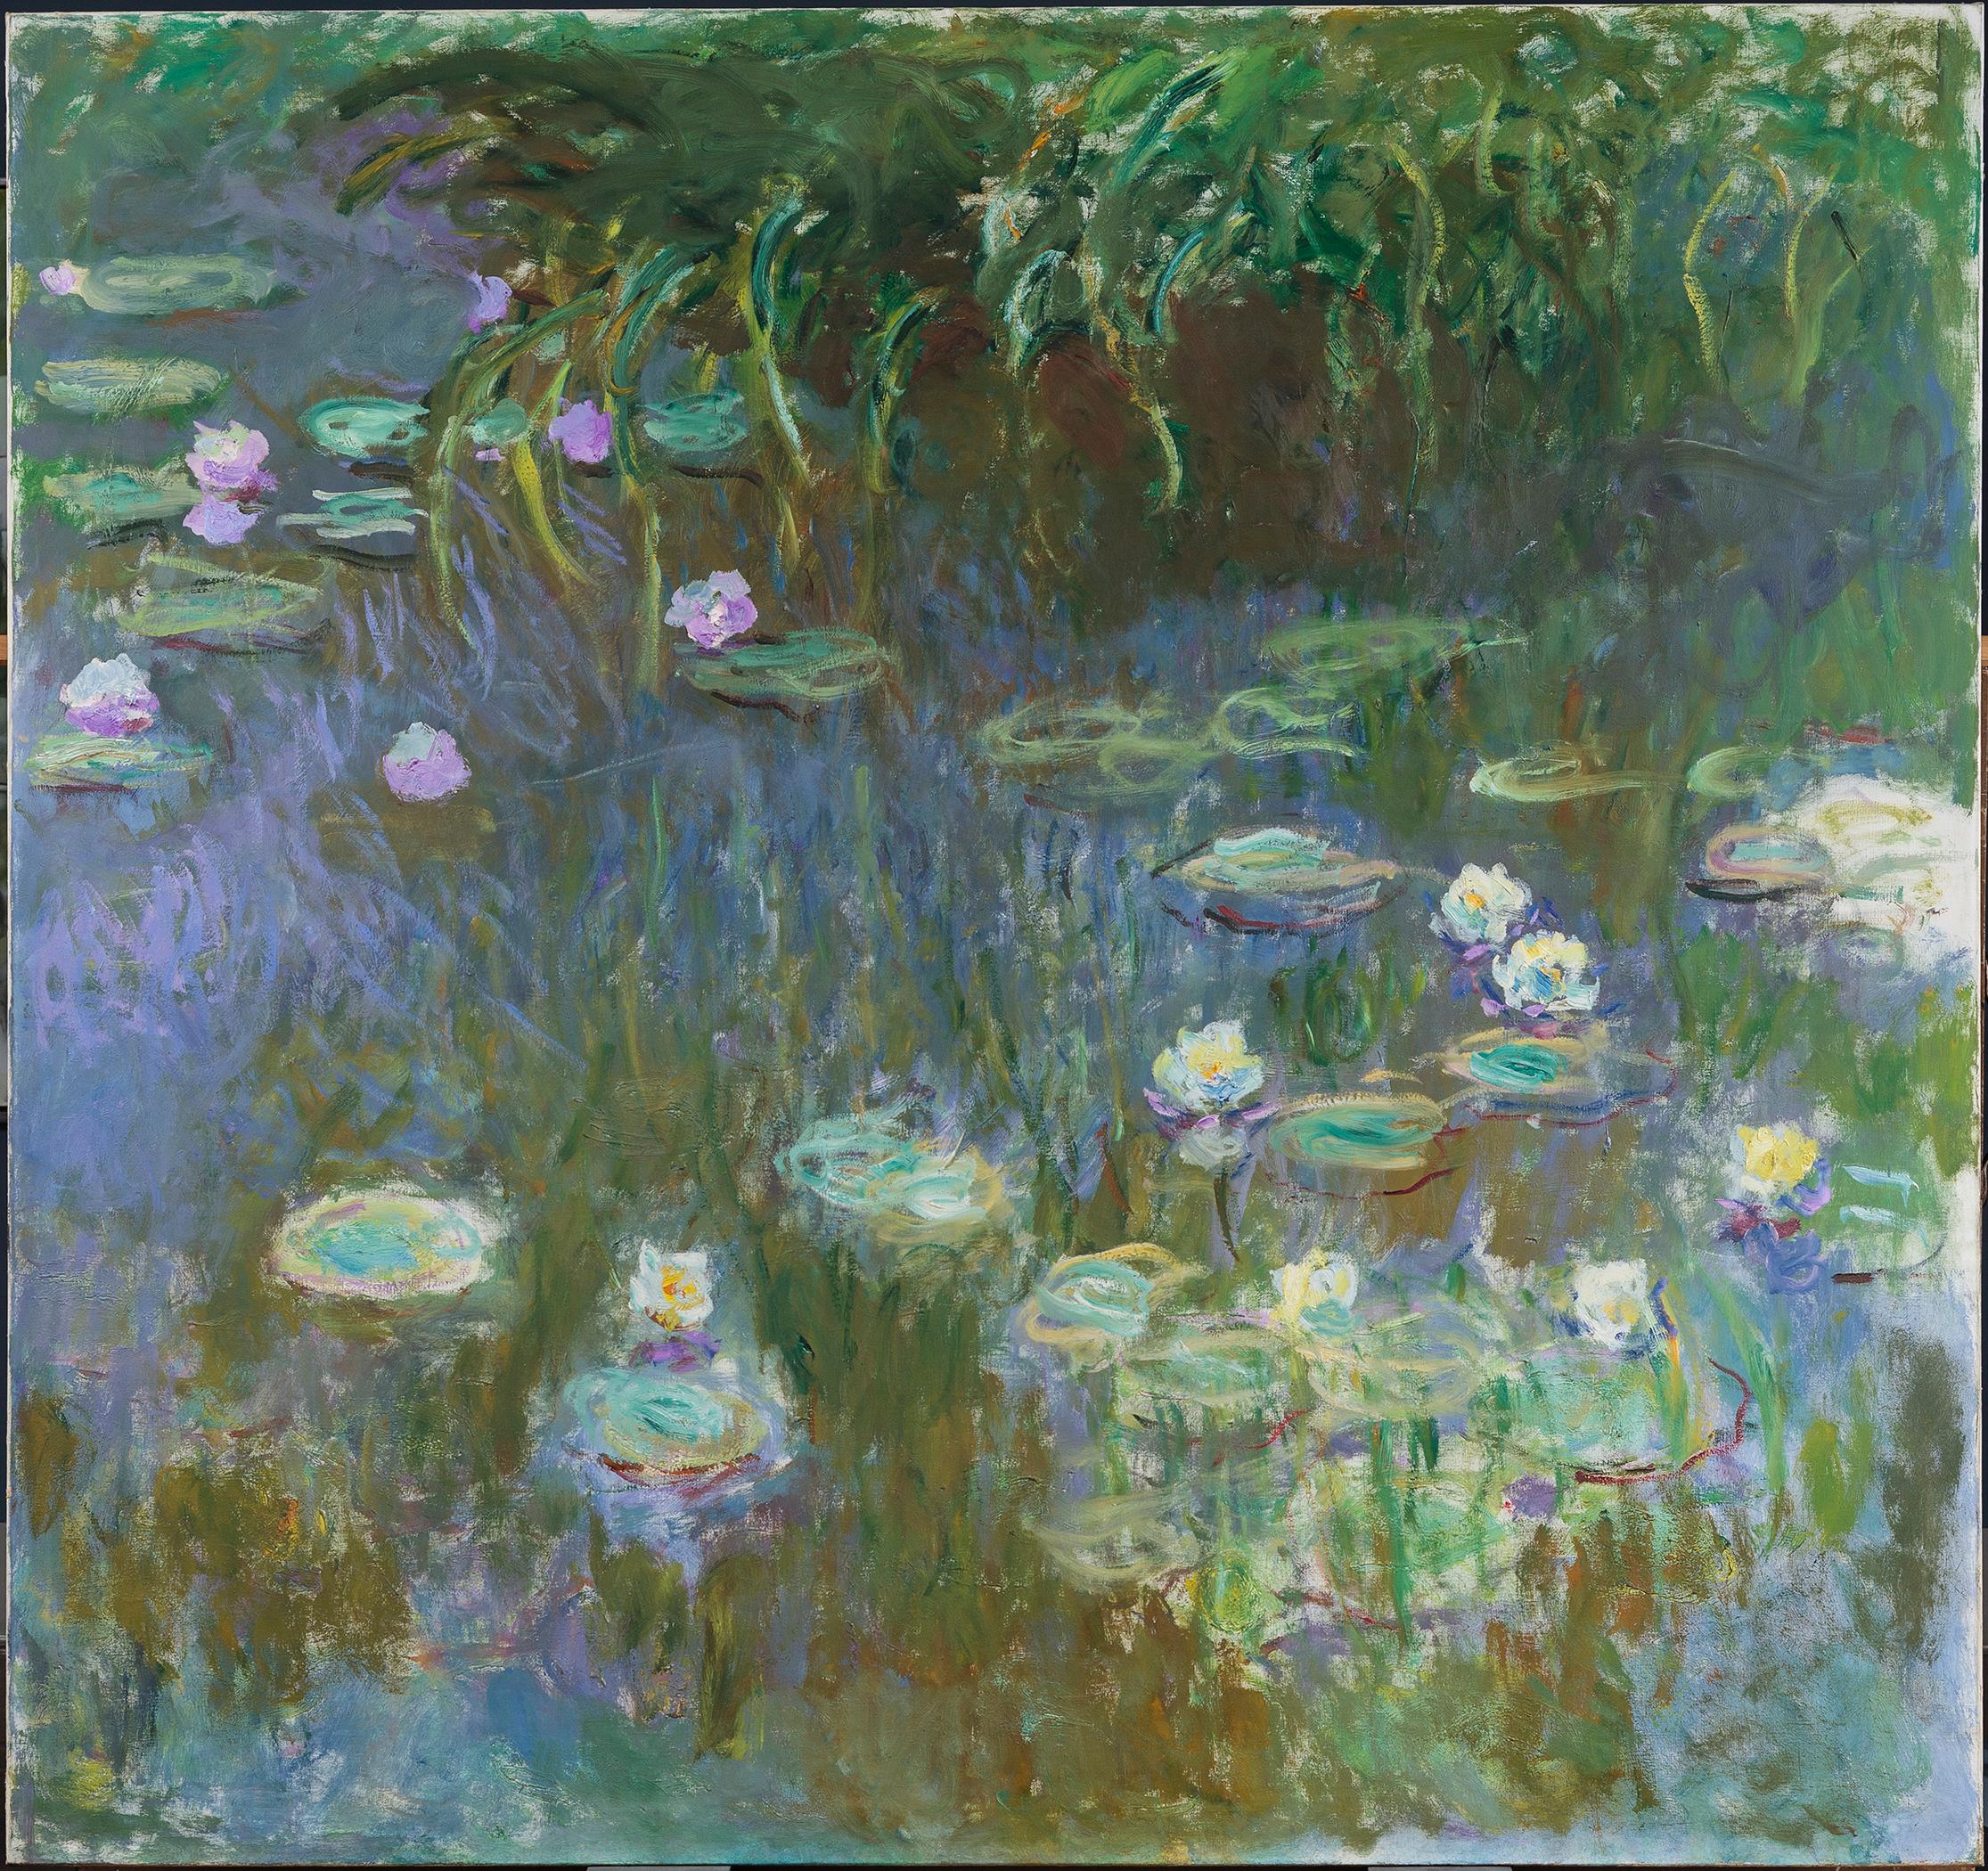 수련(Water Lilies) by Claude Monet - 1922 - 213.3 x 200 cm 